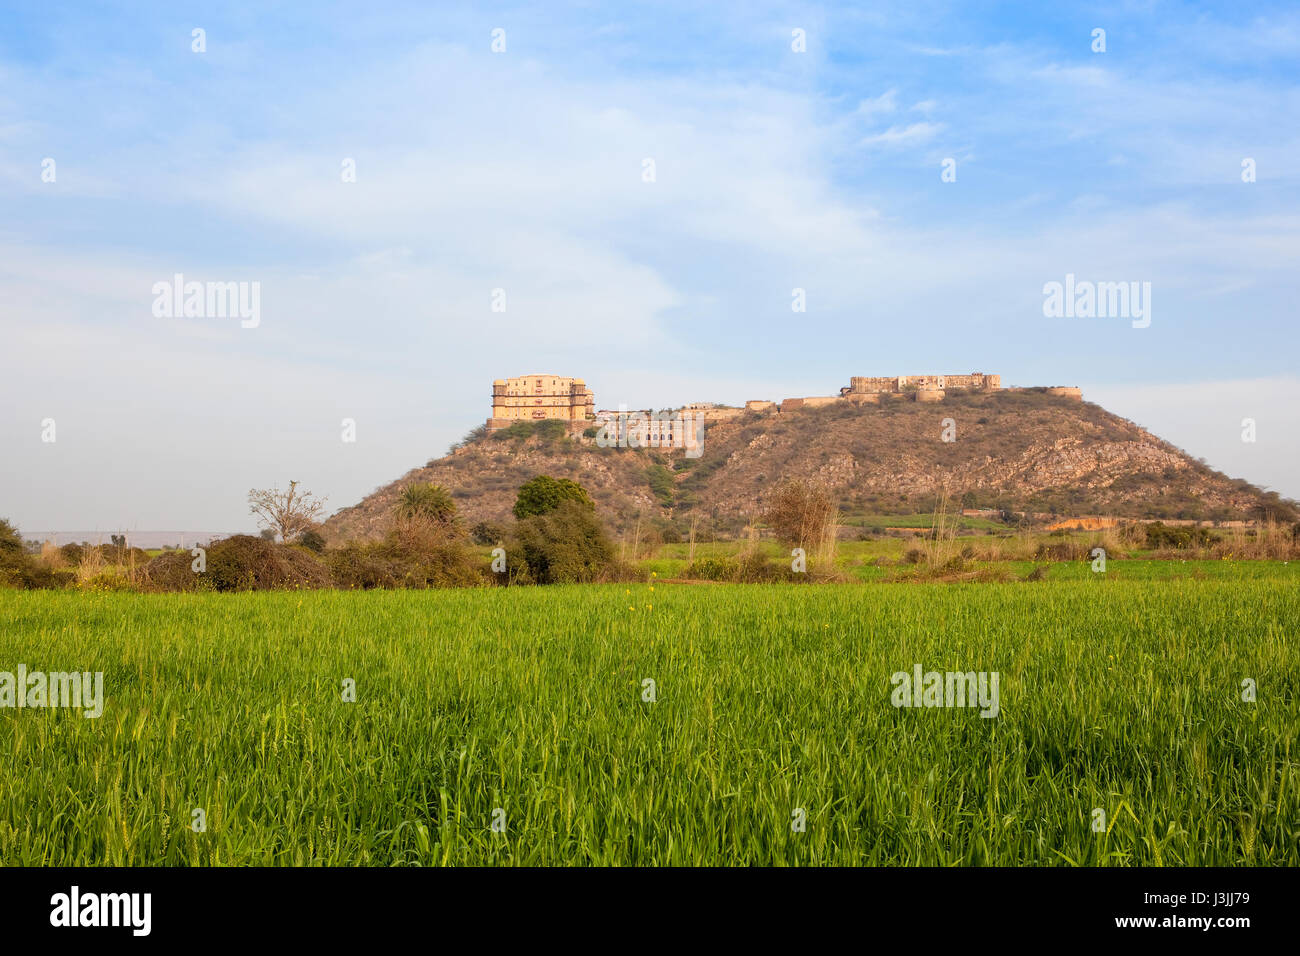 La belle tijara fort hotel dans le nord de l'Inde sur une côte de sable donnant sur des champs de blé sous un ciel nuageux bleu au printemps Banque D'Images